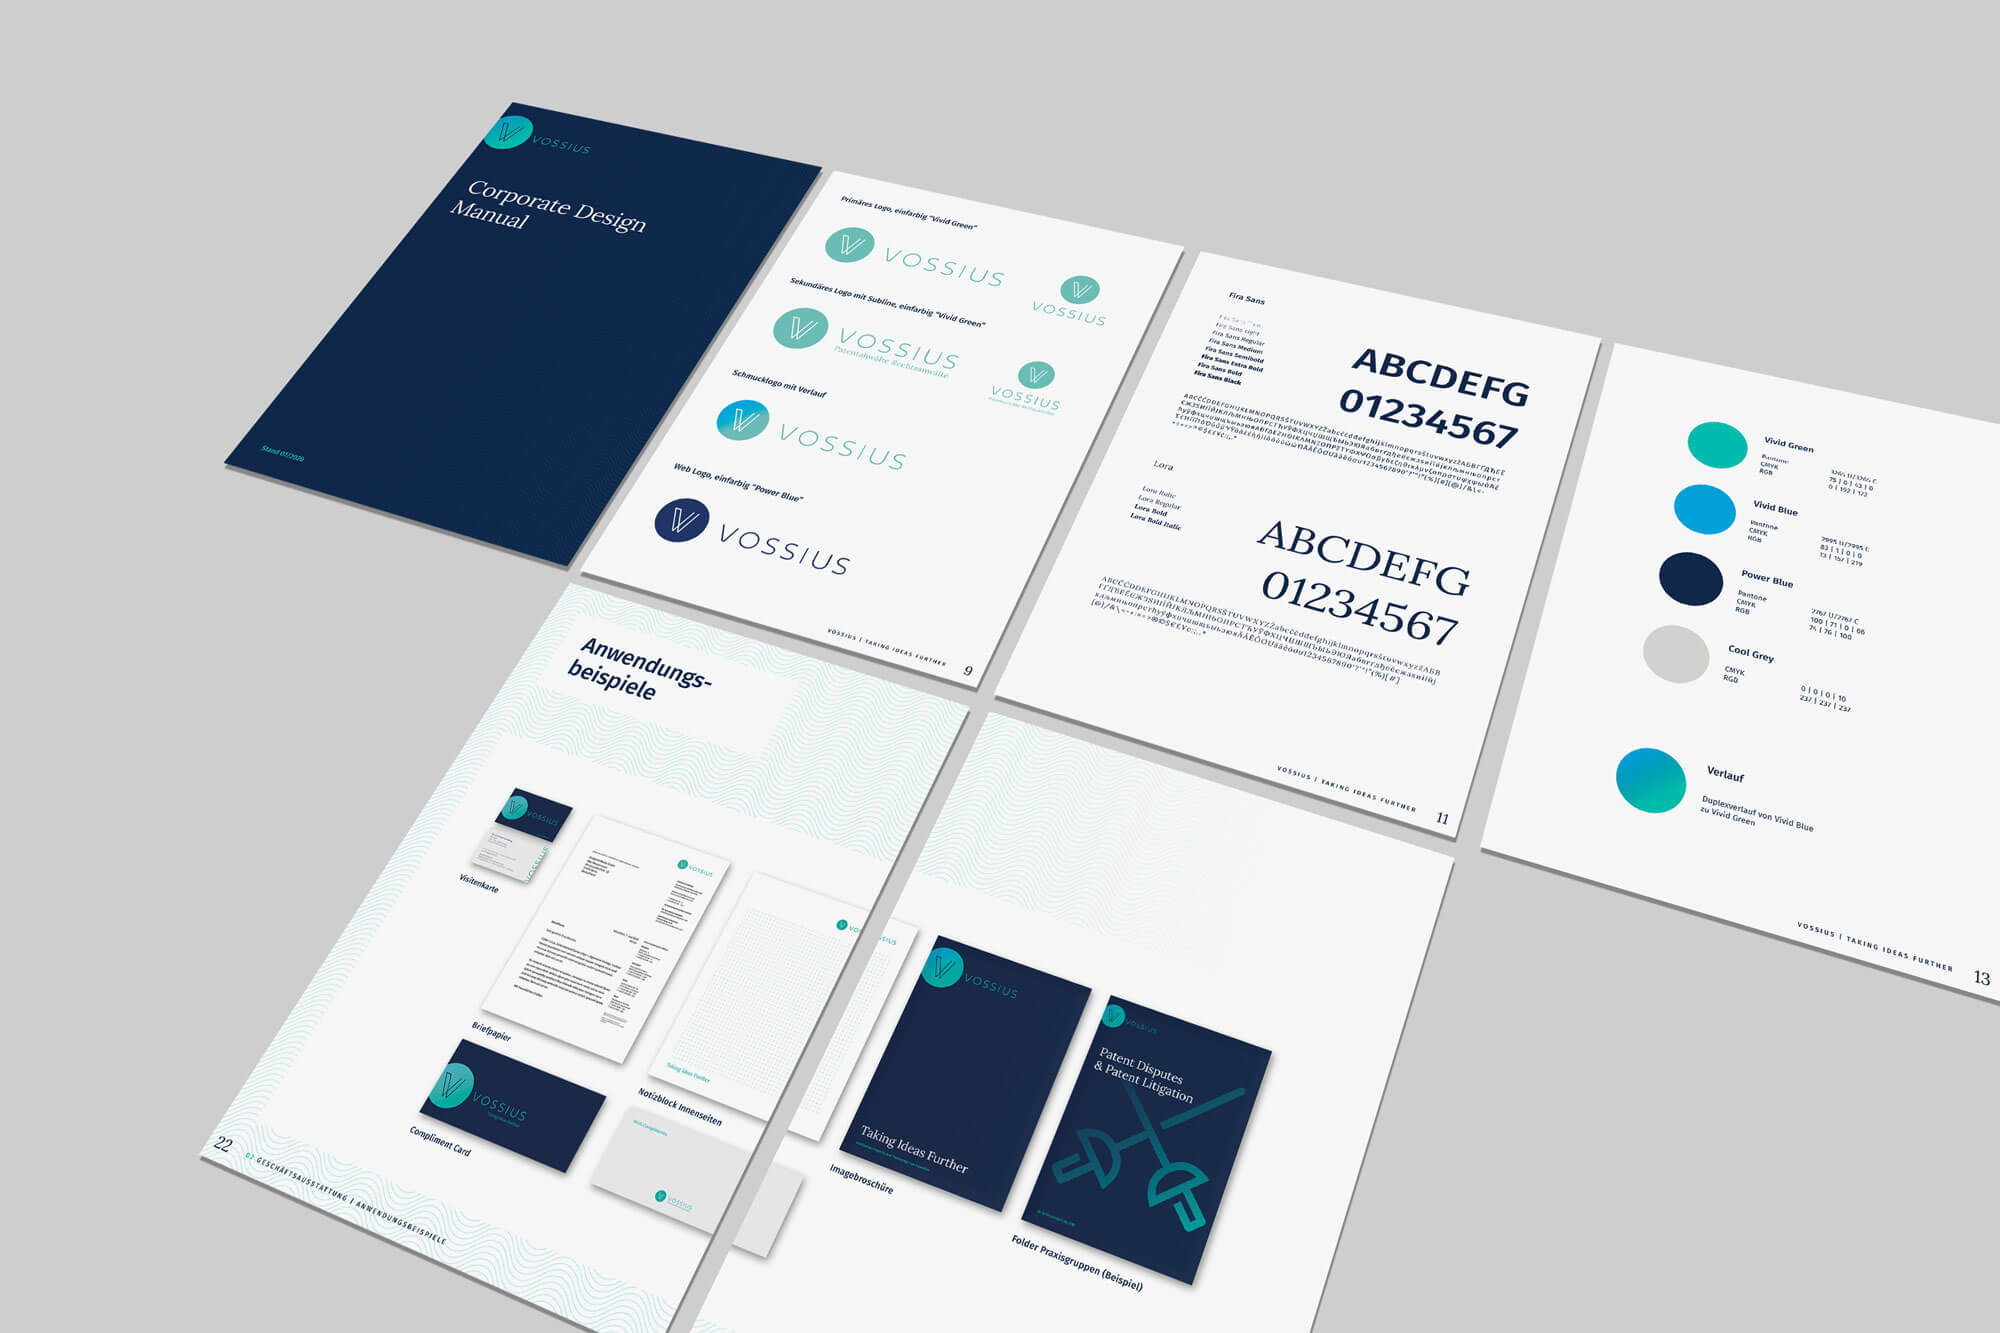 Corporate Design Manual for Vossius – GOLDLAND Media GmbH